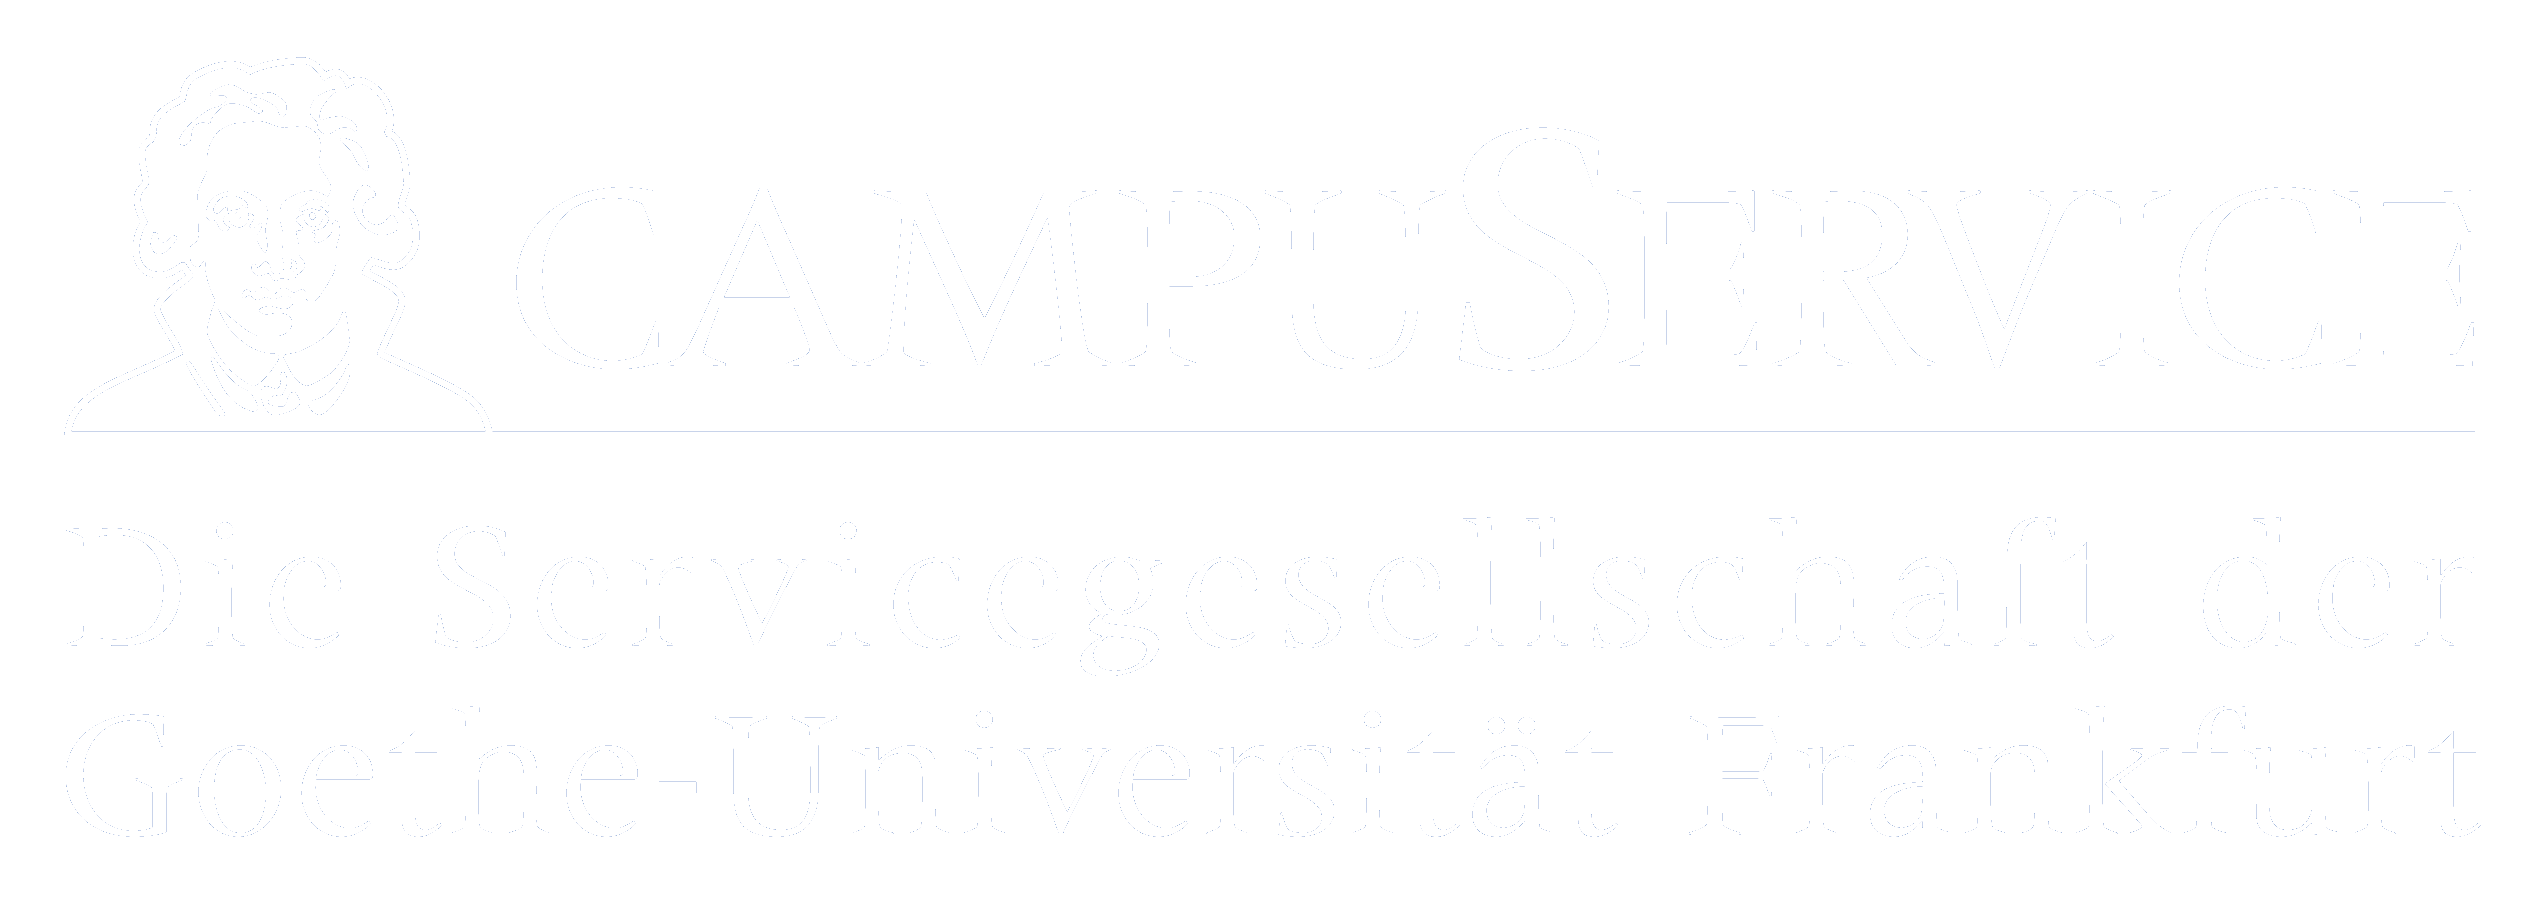 Stellenangebote - CAMPUSERVICE GmbH